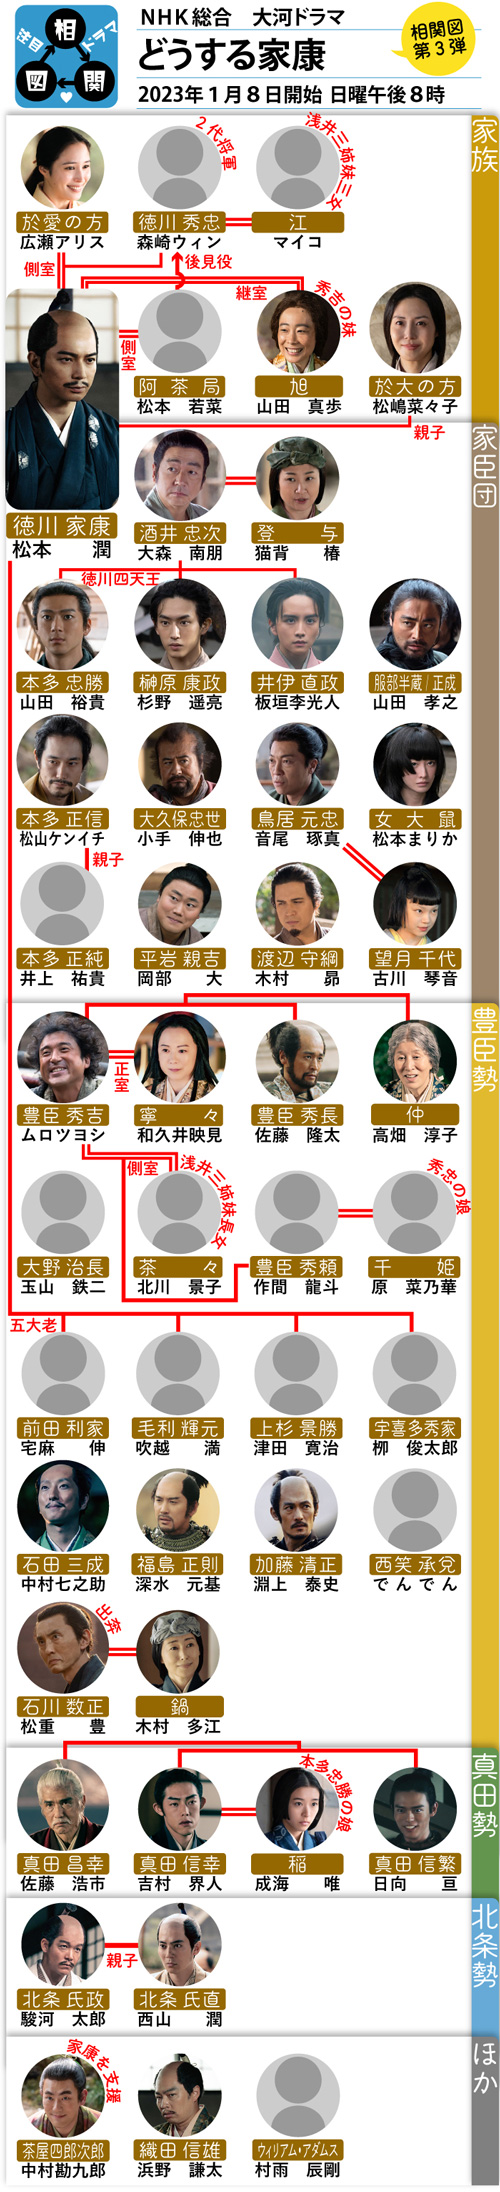 NHK大河ドラマ「どうする家康」の登場人物相関図です。登場人物をイラストと写真で紹介しています。主人公のナイーブで頼りないプリンス・徳川家康を松本潤が演じます。